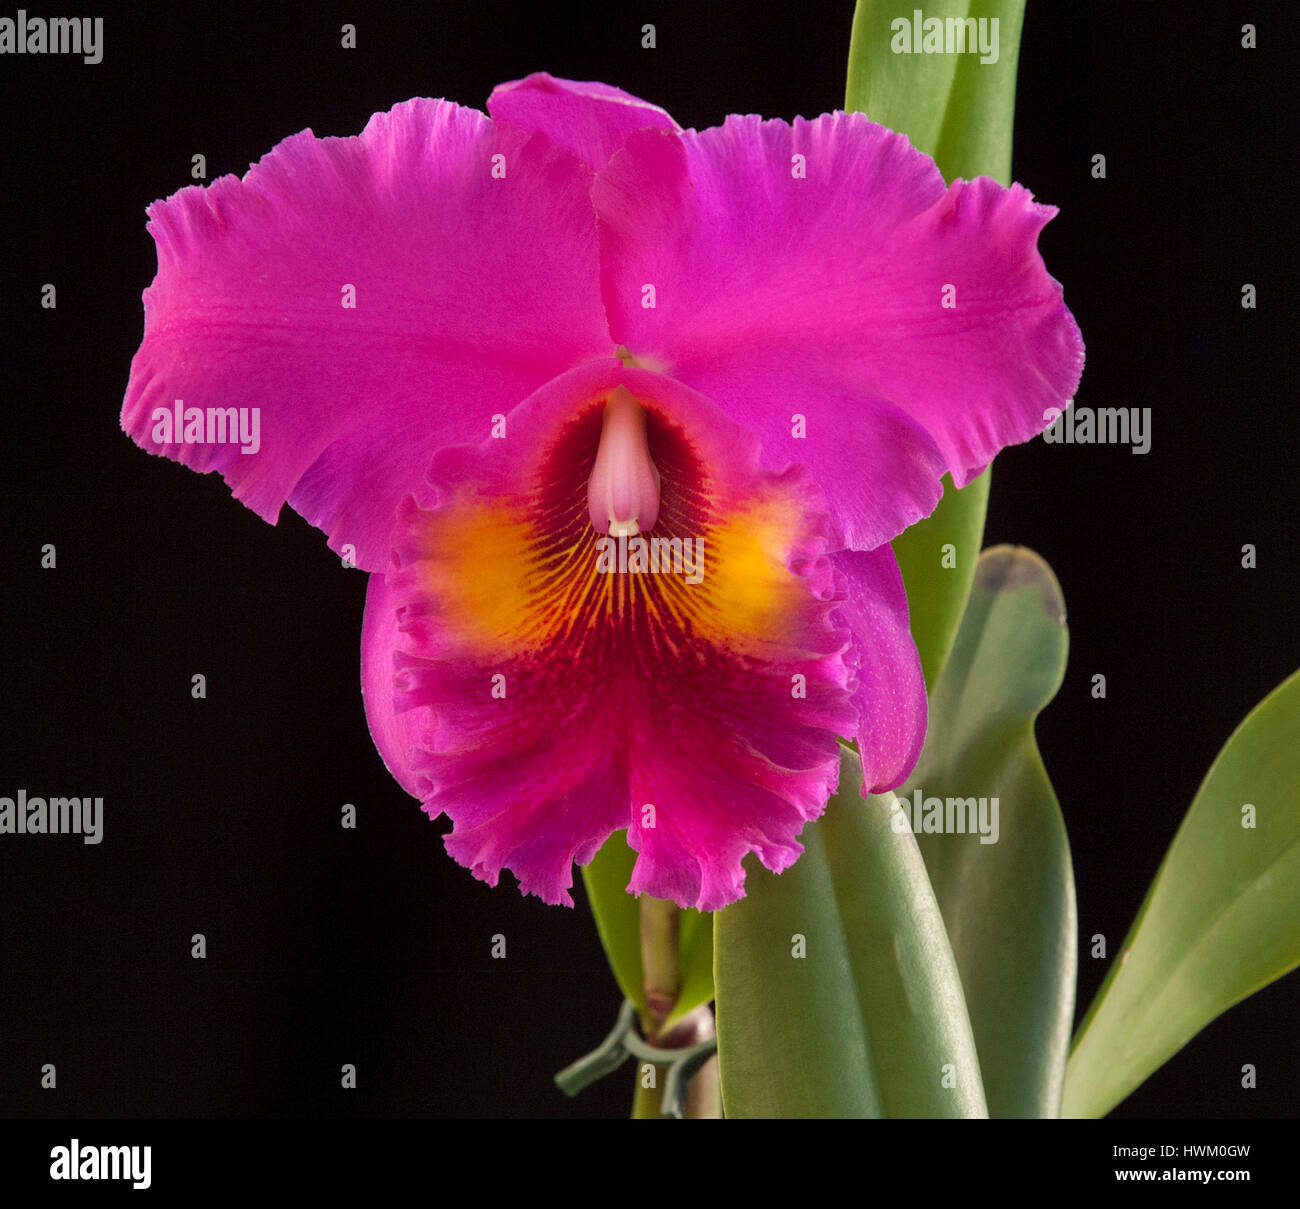 Brassolaelia Cattleya flower Da Shin 'King of Taiwan' Stock Photo